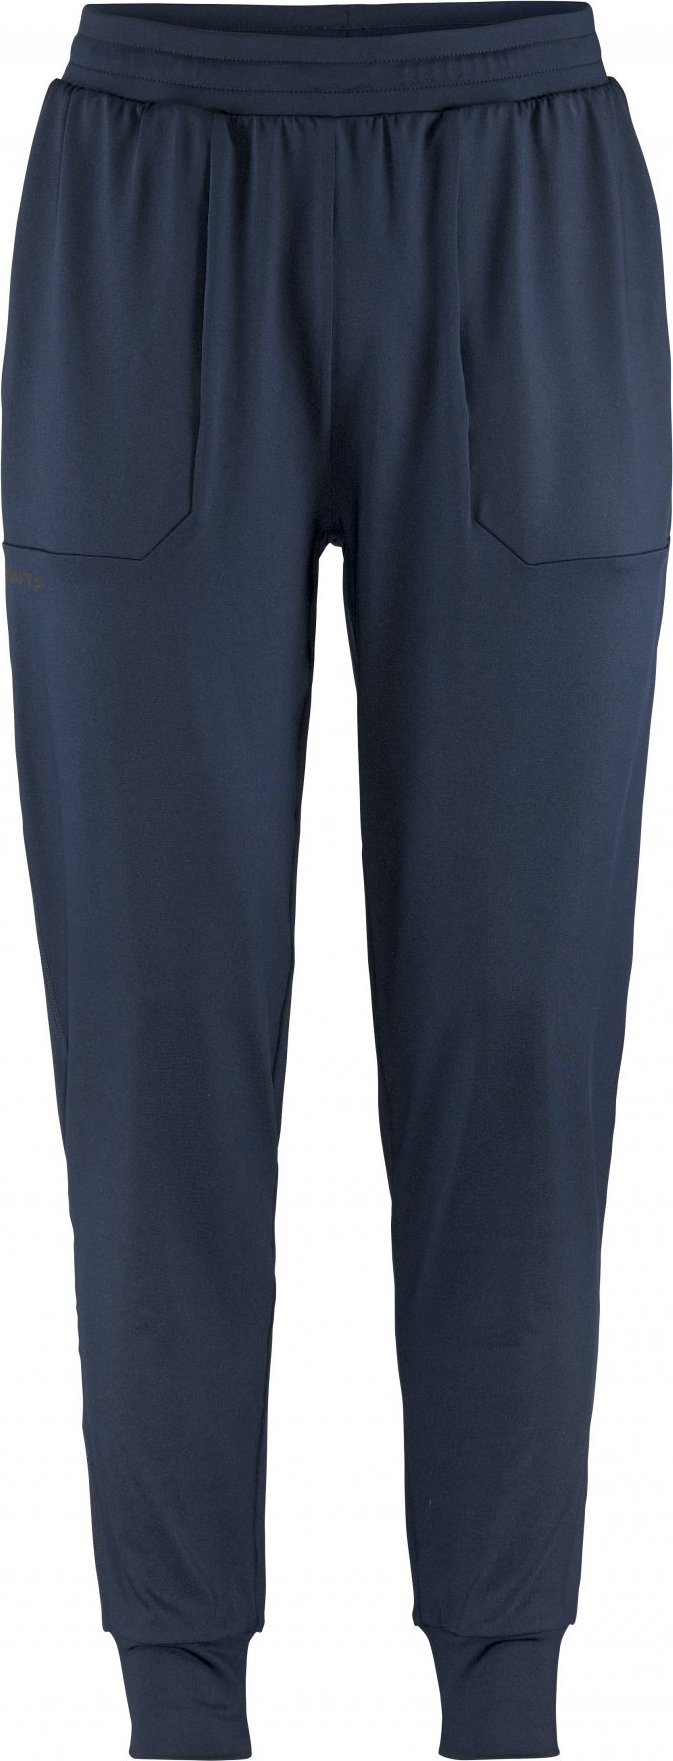 Pánské sportovní kalhoty CRAFT ADV Tone Jersey - modrá Velikost: M